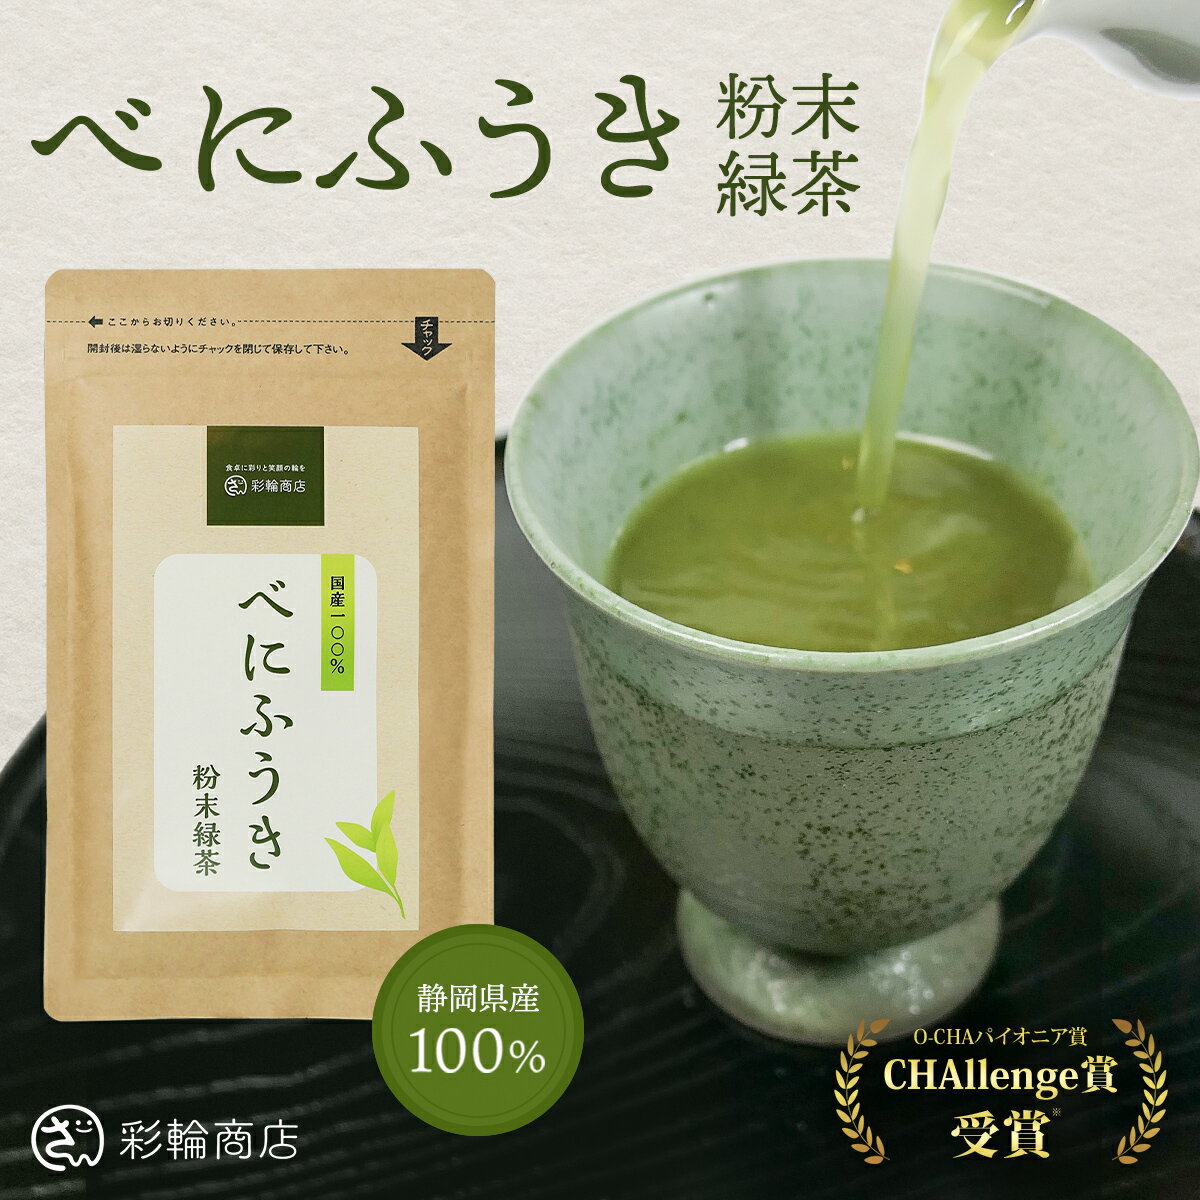 彩輪商店 べにふうき茶 粉末 粉茶 約160杯分 静岡県産 べにふうき 国内製造 高濃度 メチル化カテキン チャック付き 80g